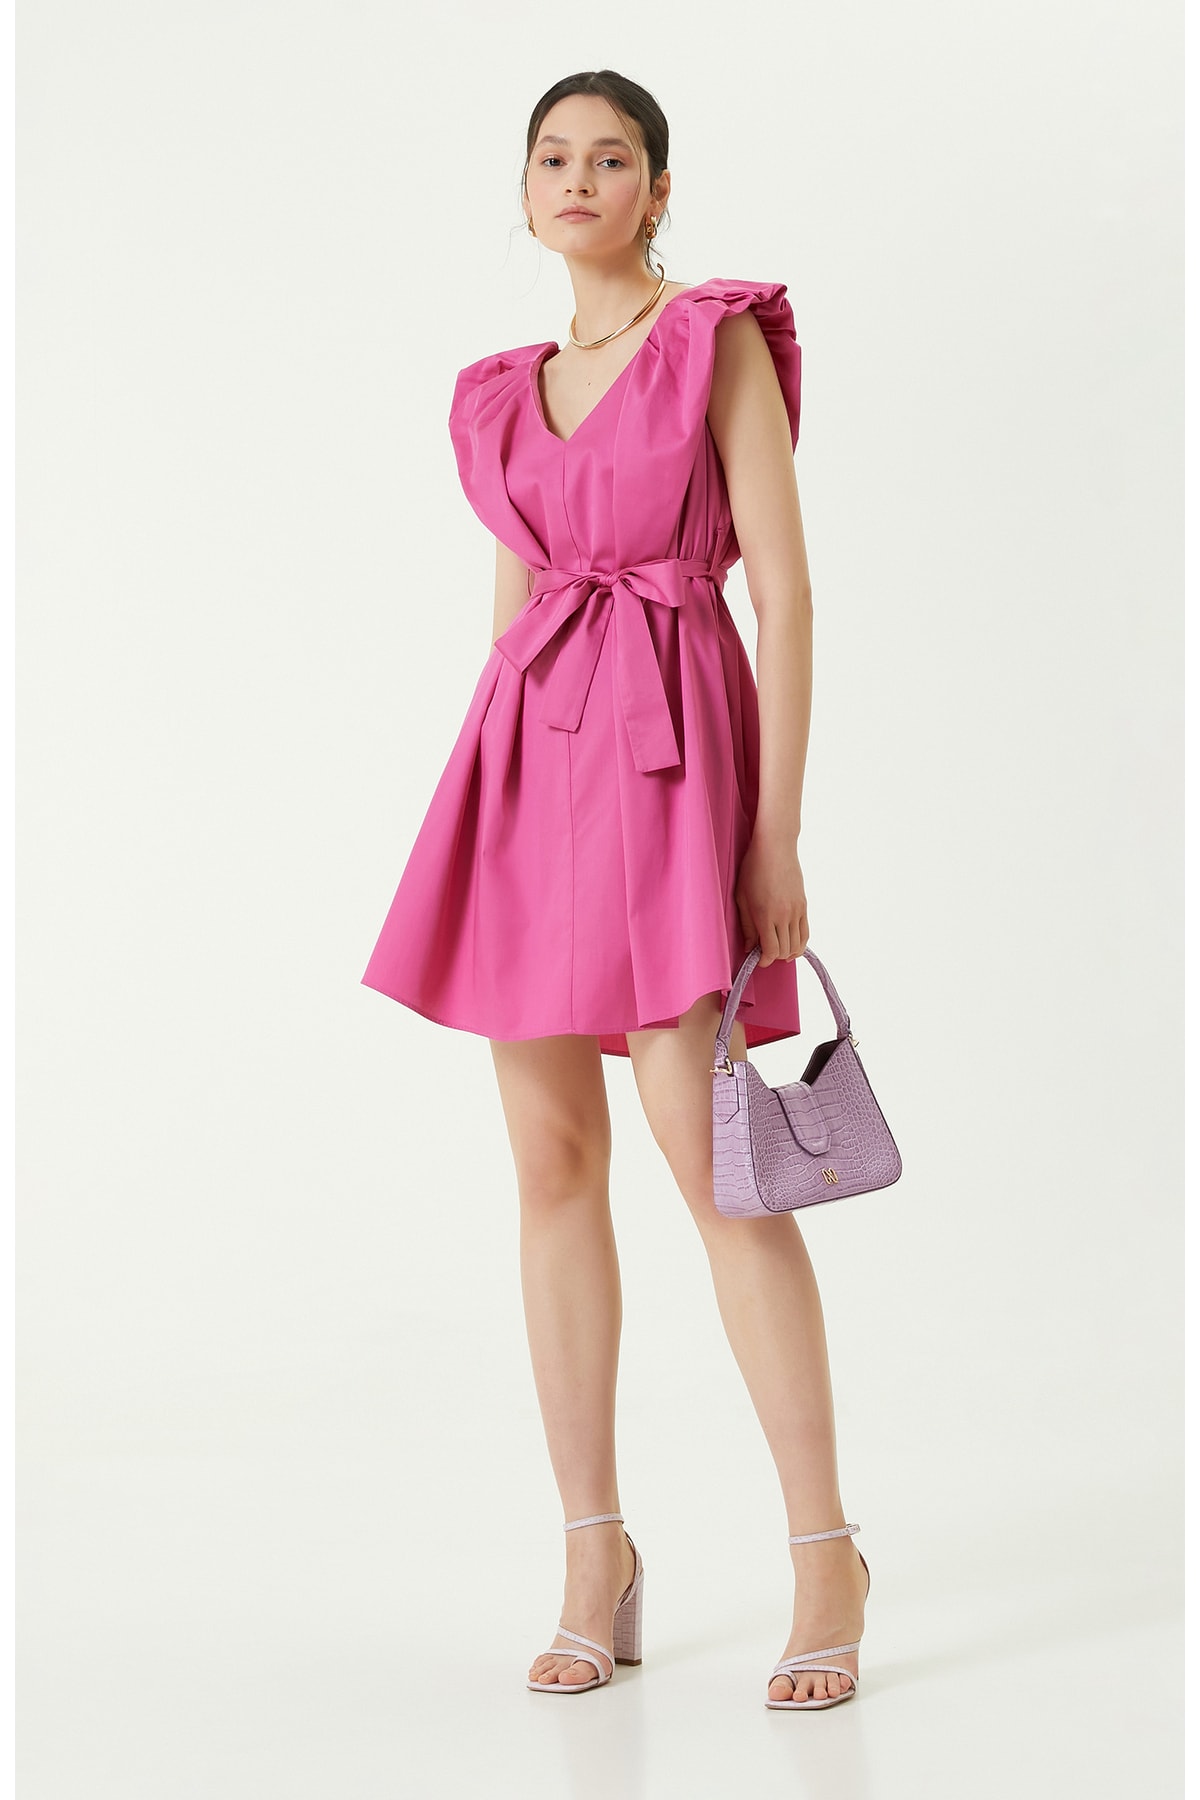 цена Платье без рукавов с V-образным вырезом цвета фуксии Network, розовый